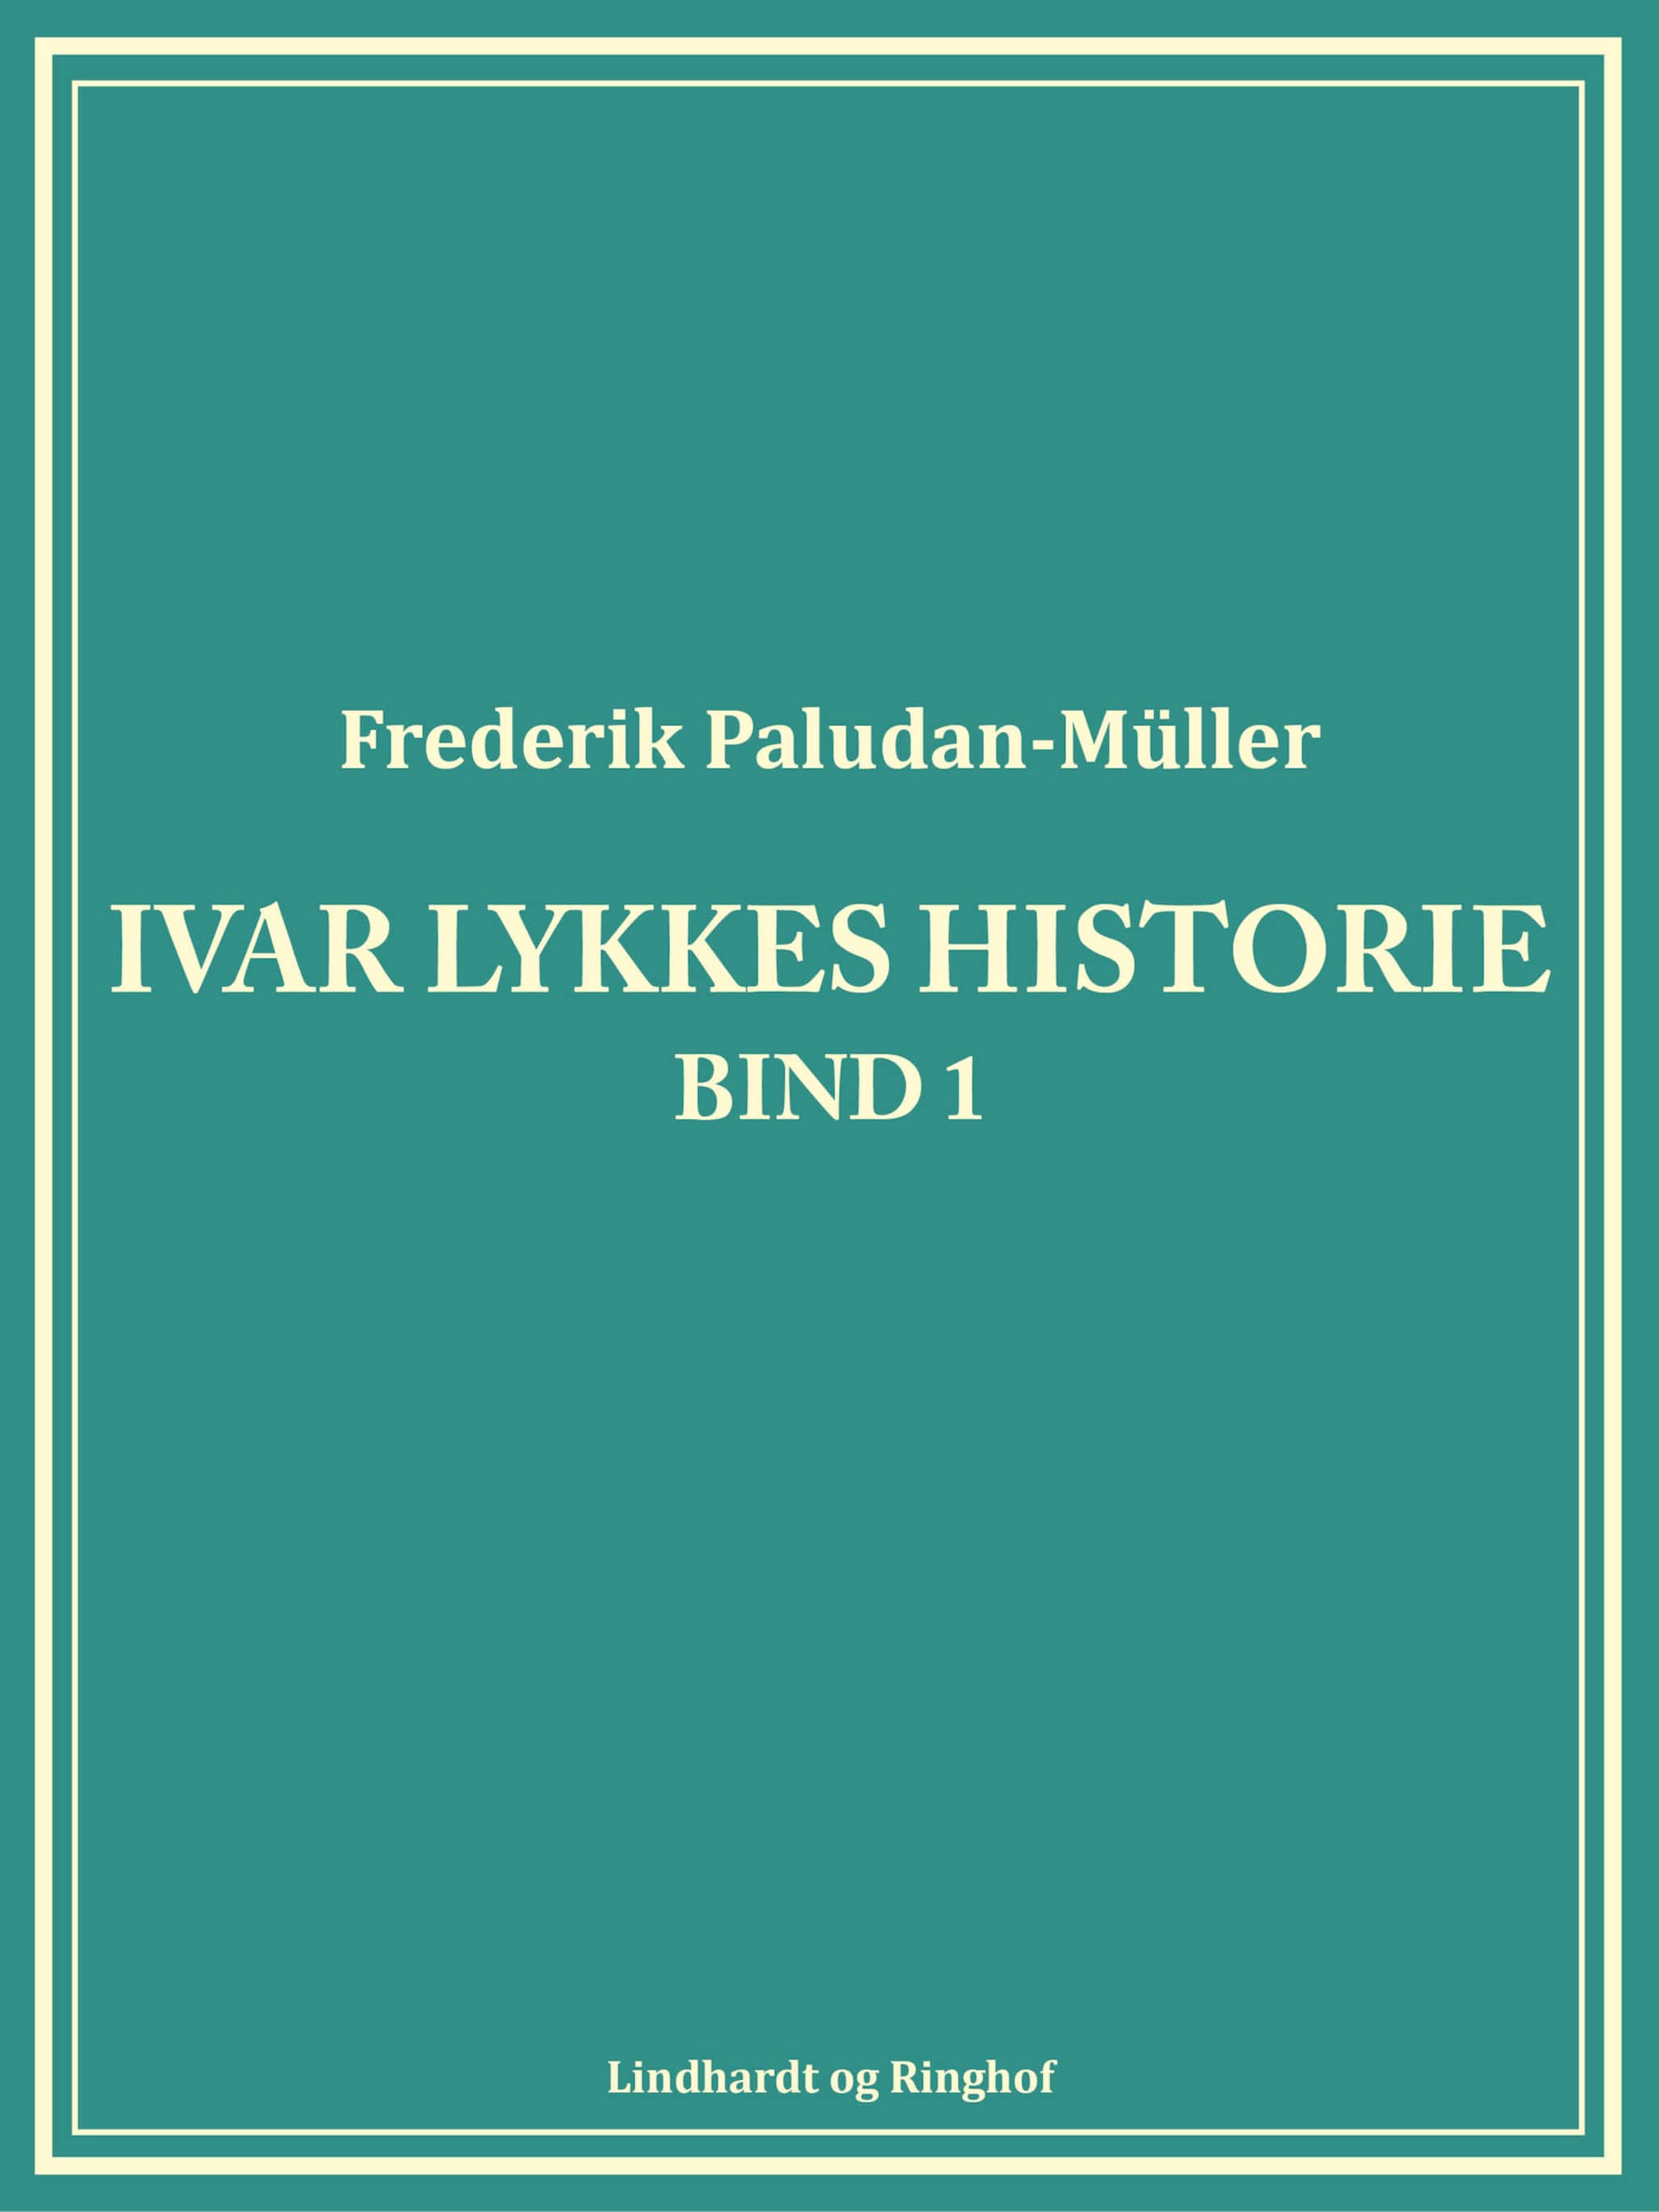 Ivar Lykkes historie bind 1 ilmaiseksi